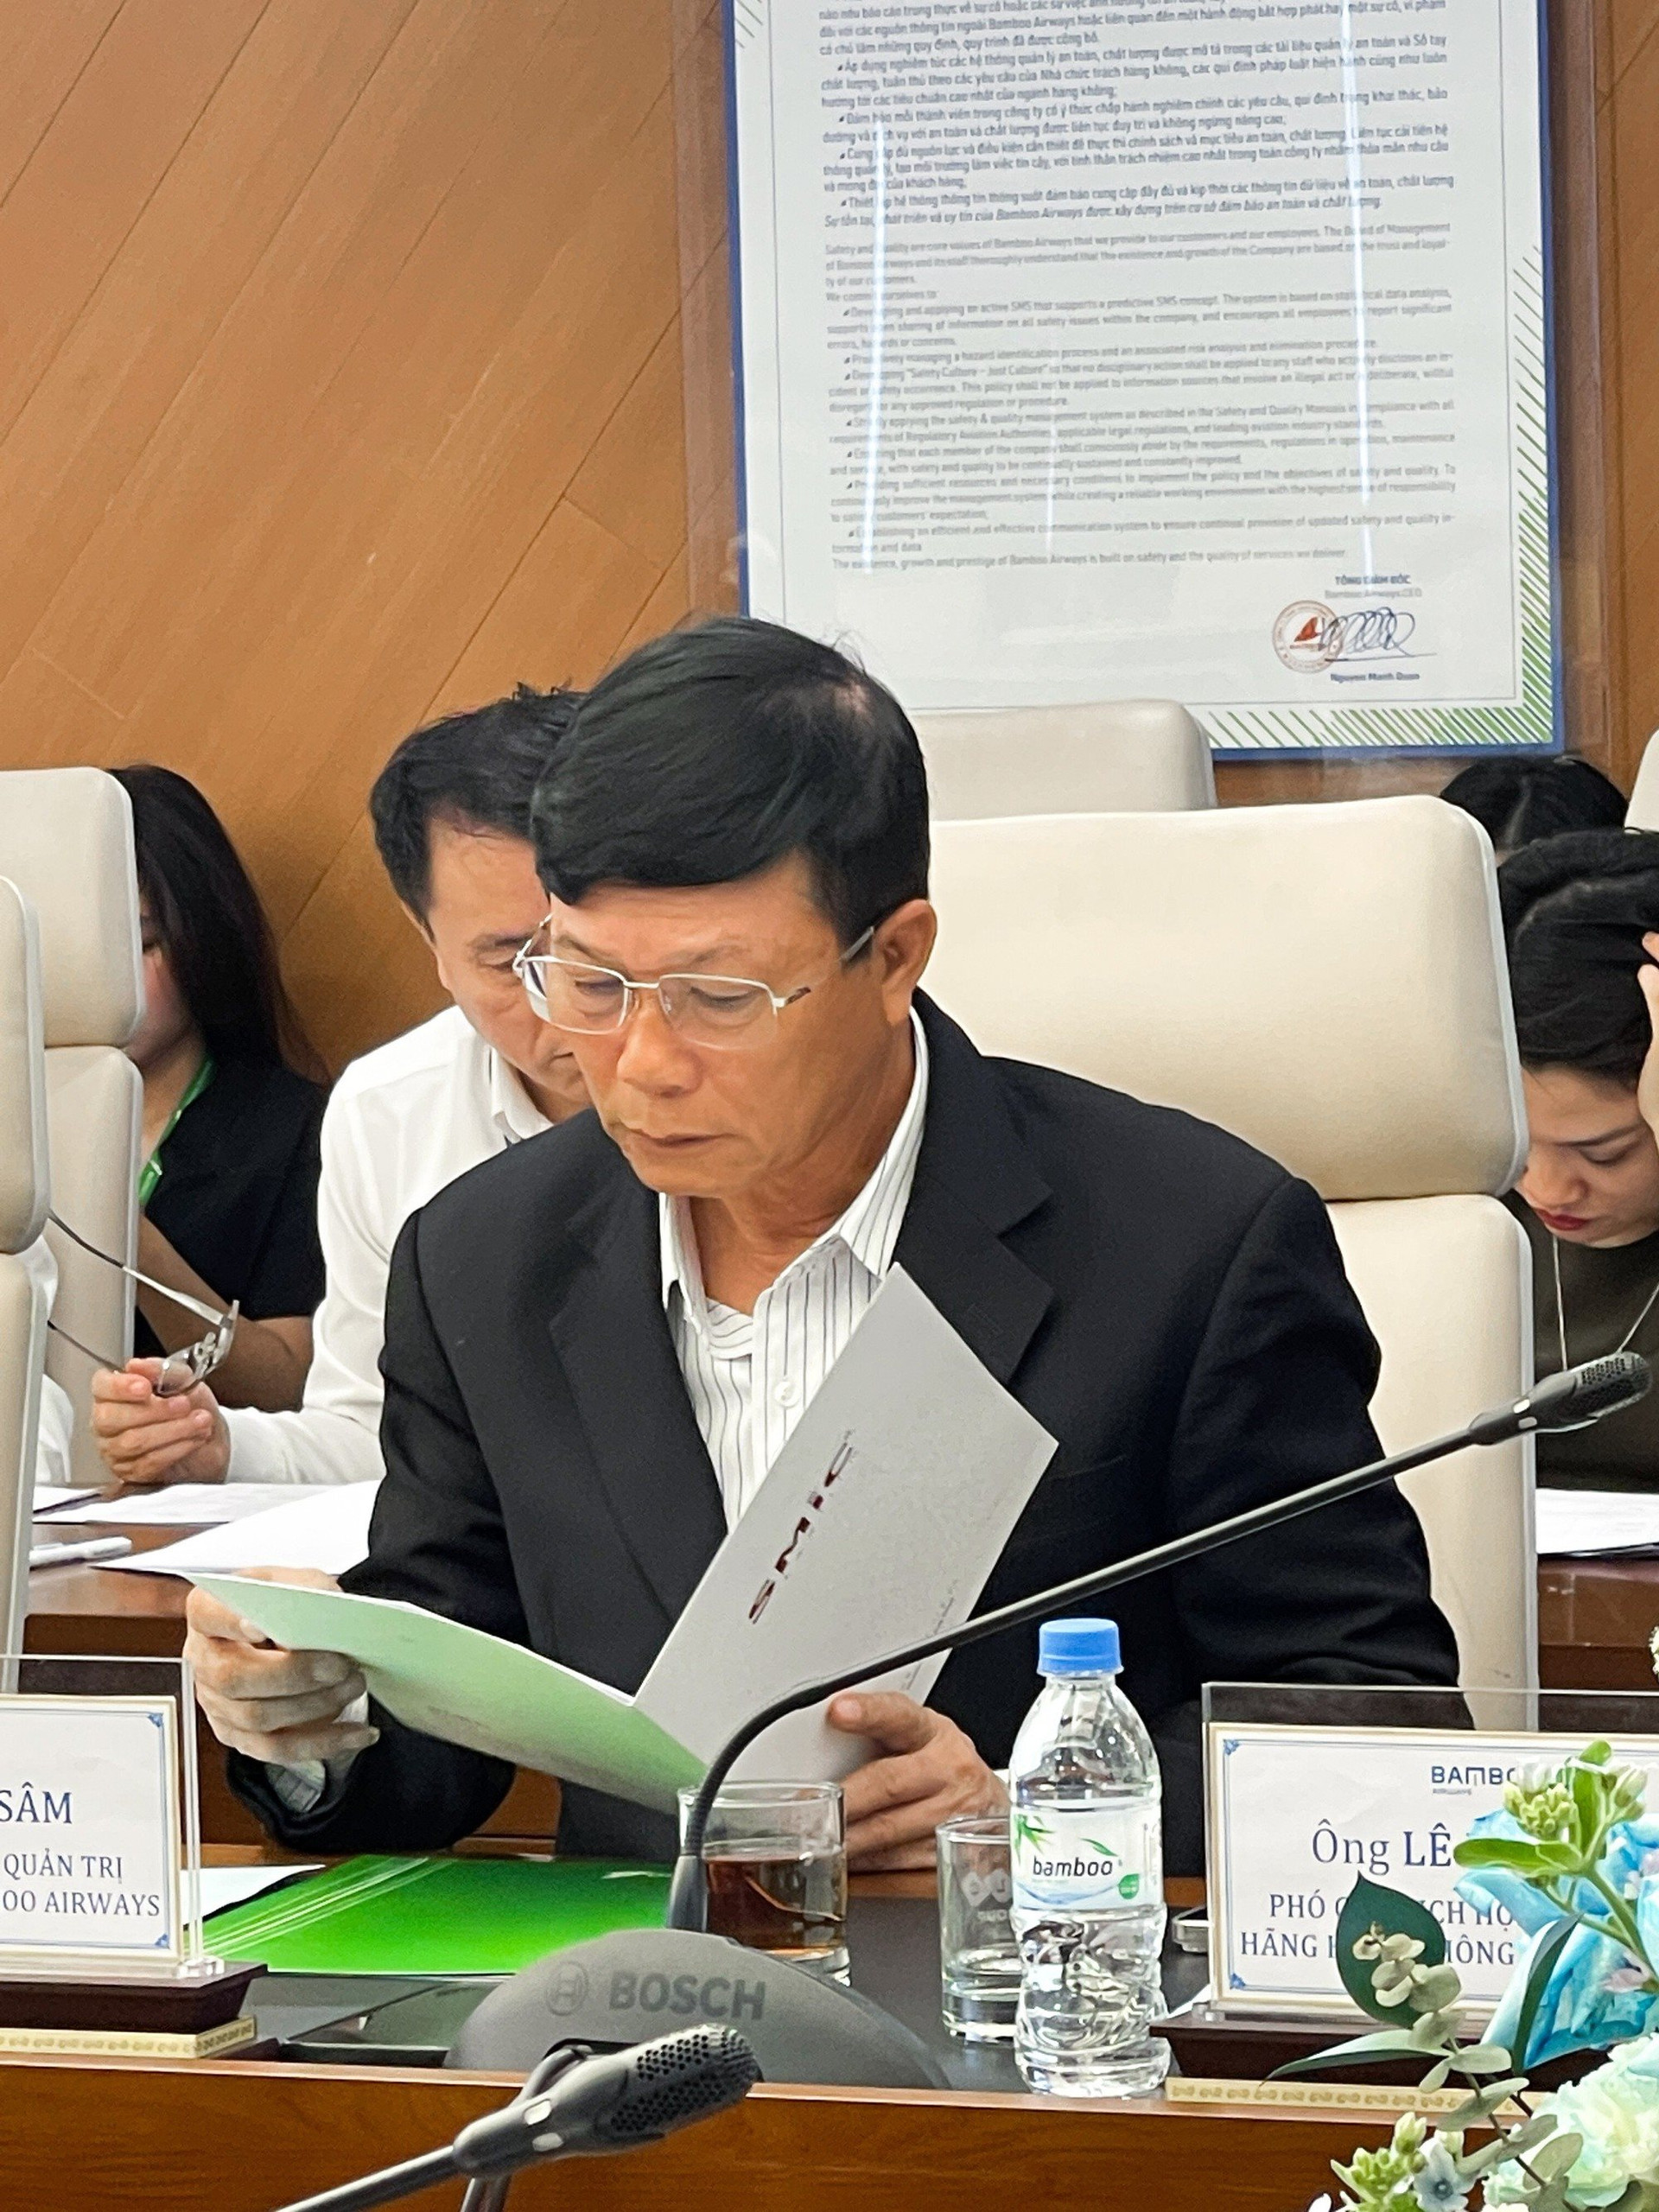 Chủ tịch Bamboo Airways Lê Thái Sâm rời chức tại FLC, Hội đồng quản trị FLC còn những ai? - Ảnh 1.